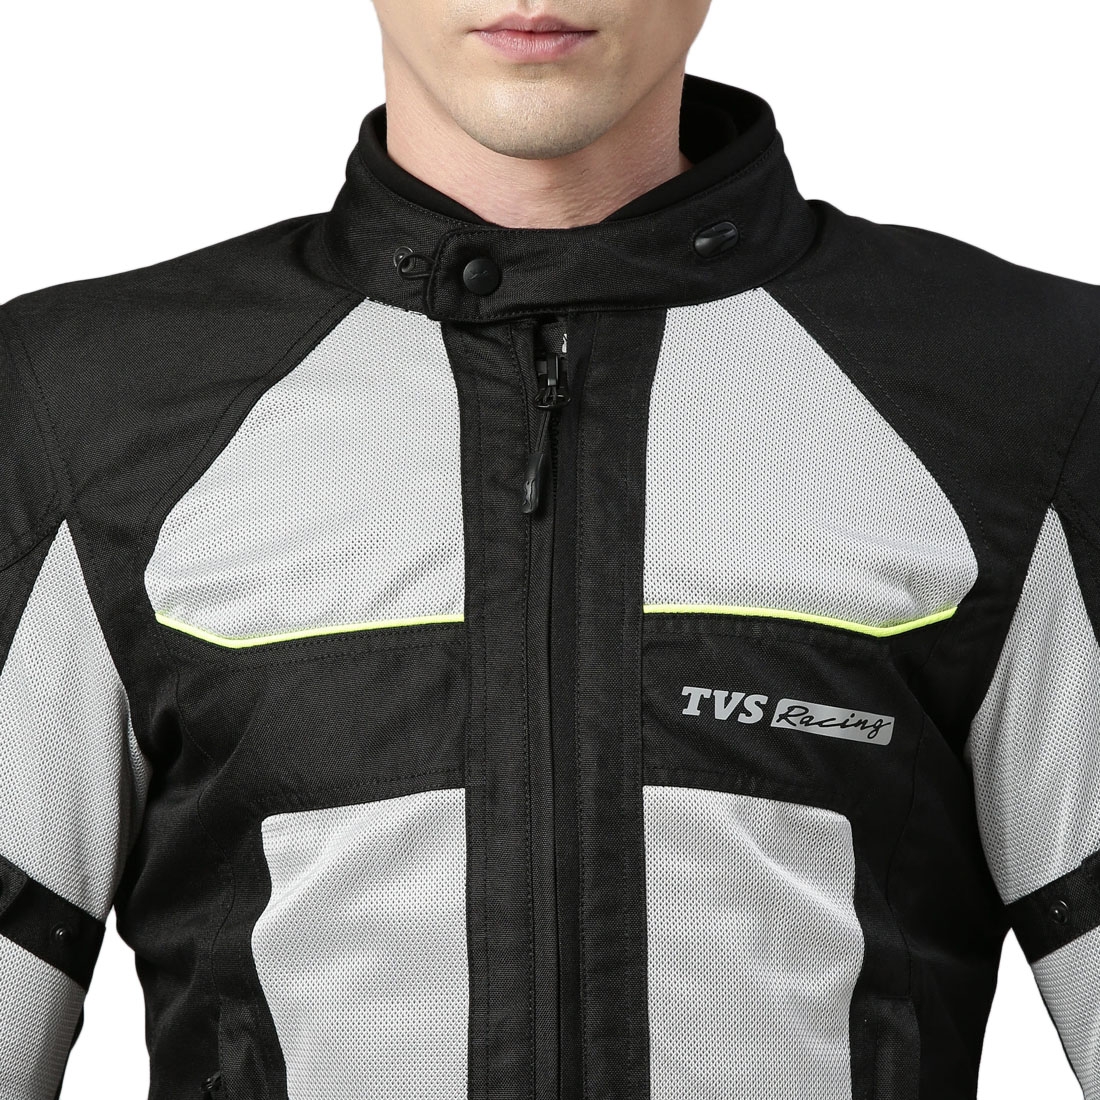 TVS Racing Asphalt Neon Riding Jacket | Buy online in India